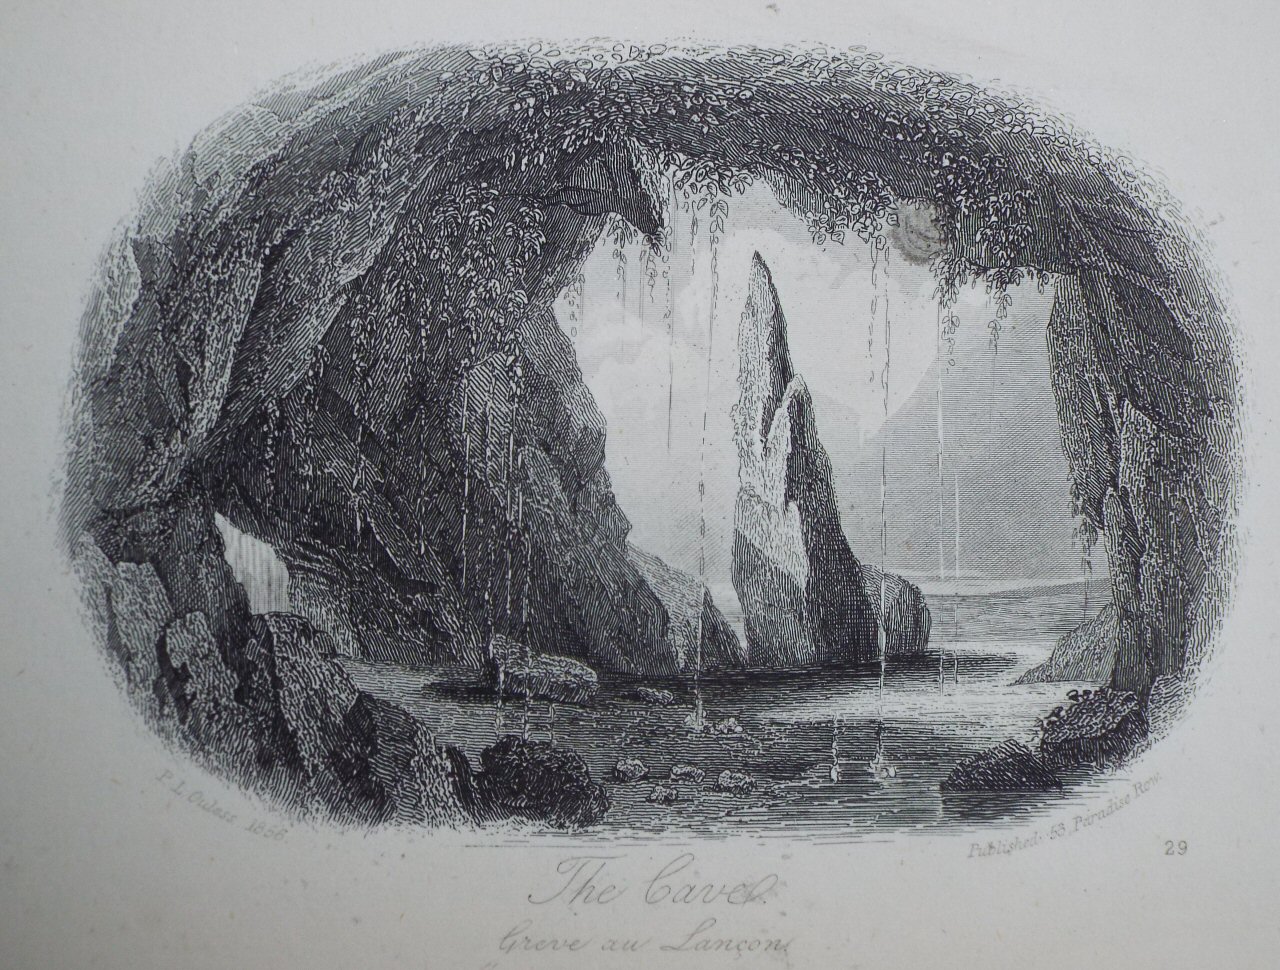 Steel Vignette - The Cave, Greve au Lancon.